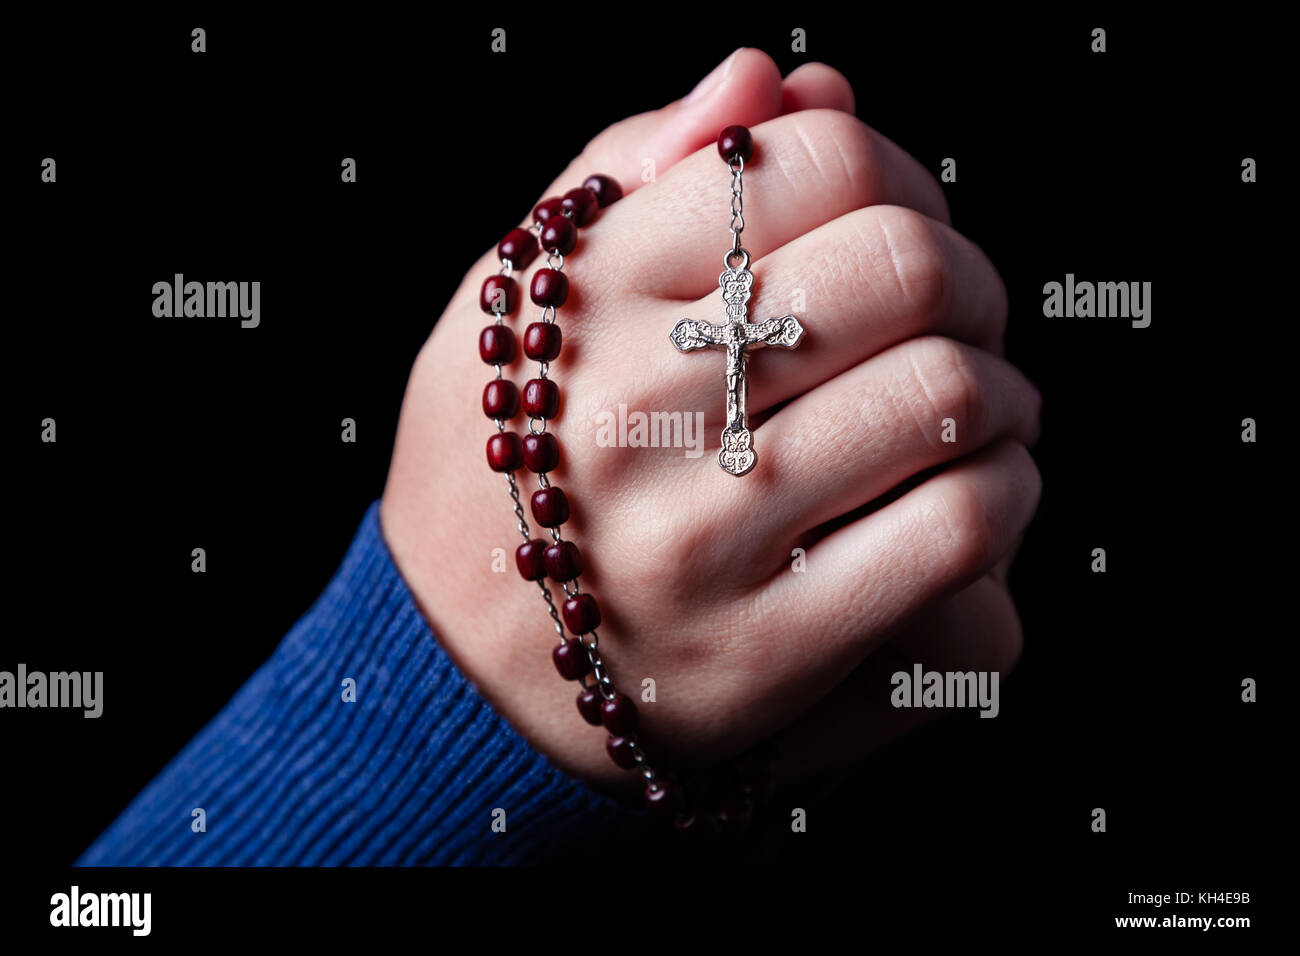 Weibliche Hände halten einen Rosenkranz beten mit Jesus Christus am Kreuz oder Kruzifix auf schwarzem Hintergrund. Frau mit christlichen katholischen Glaubens hand Stockfoto